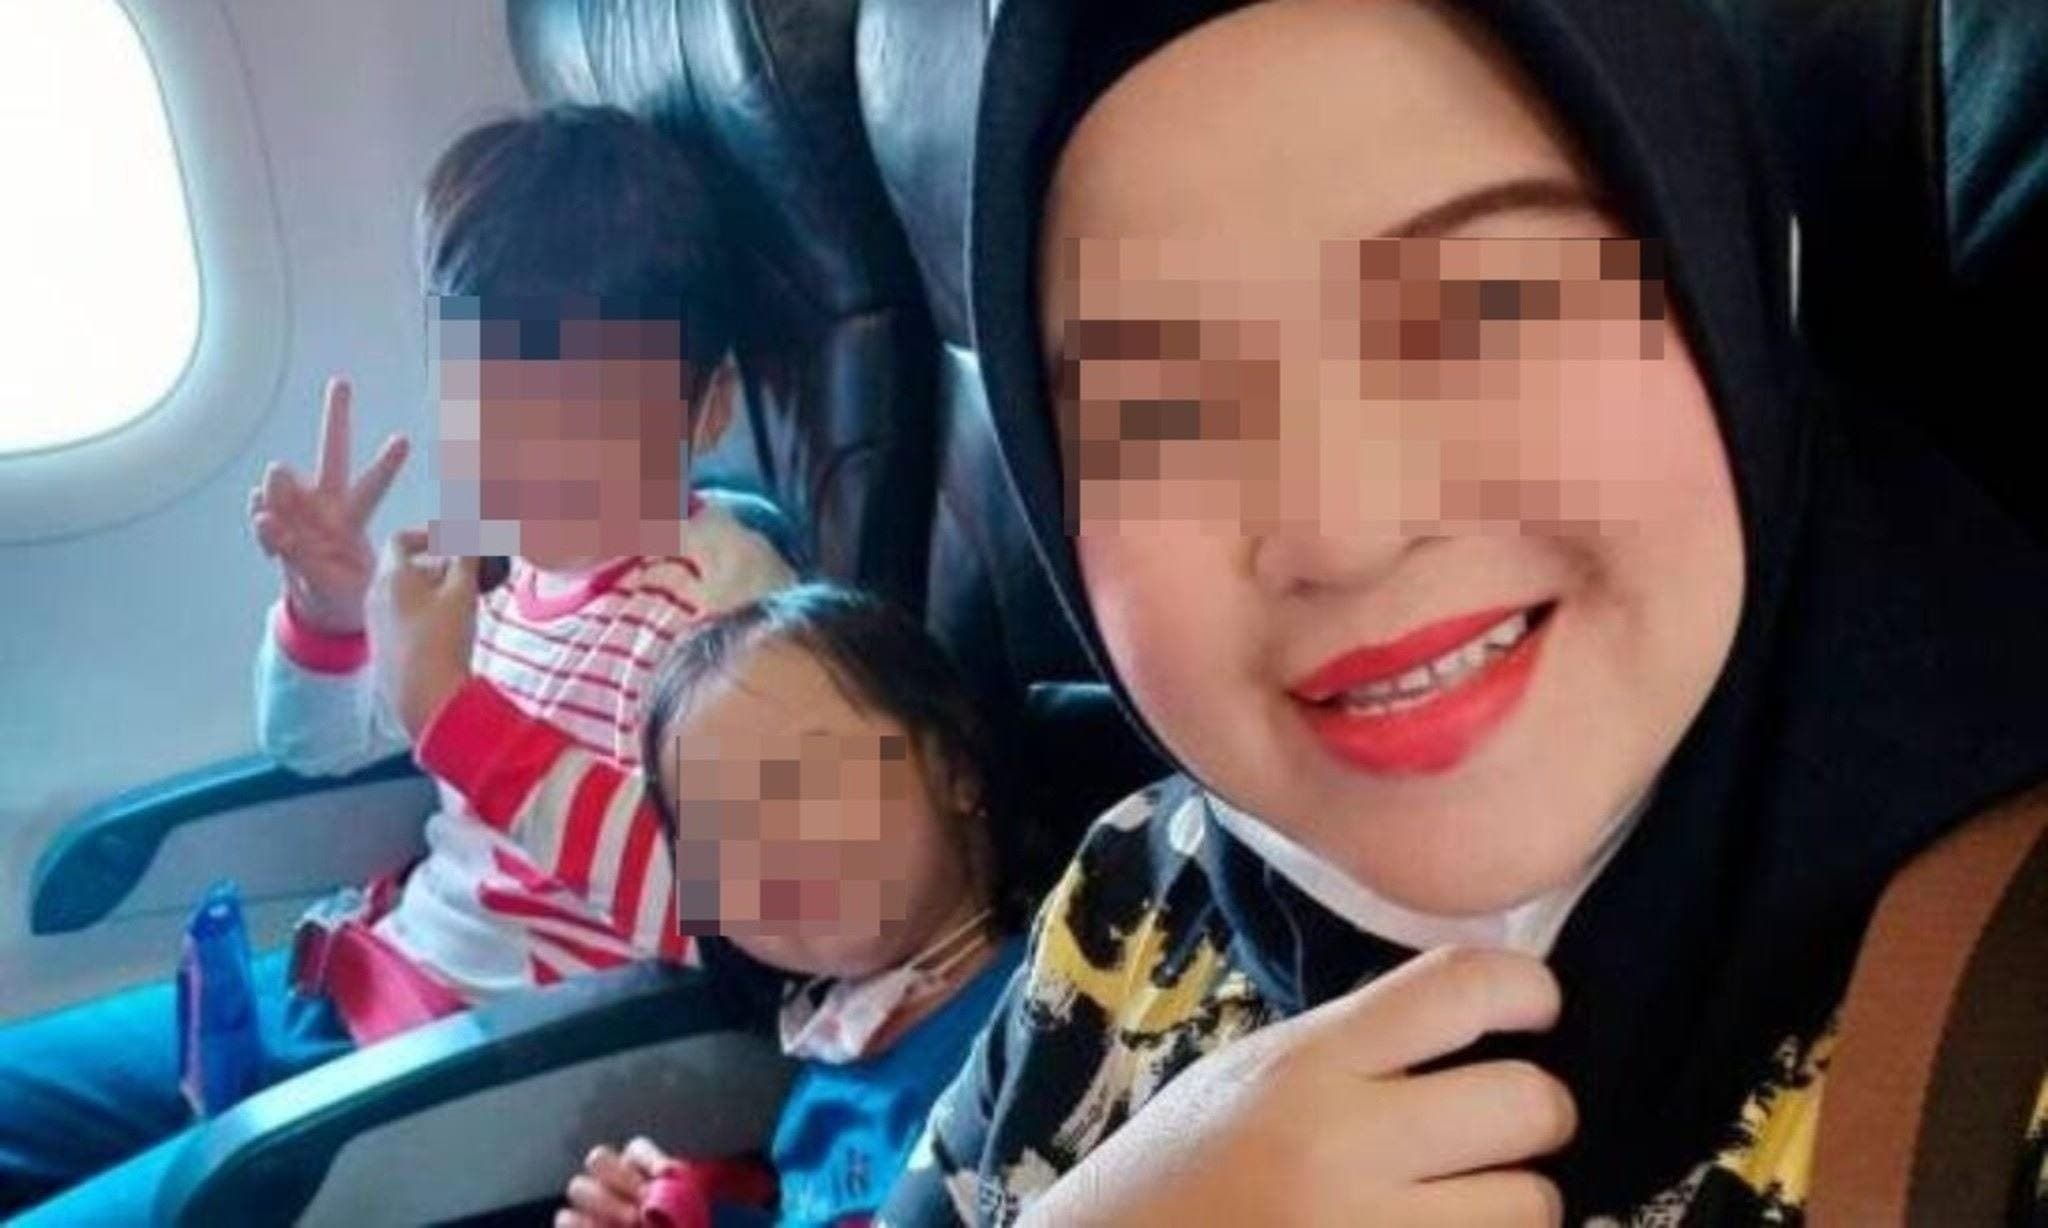 Madre embarazada muere con sus hijos en avión y se despide en video: “Adiós familia”